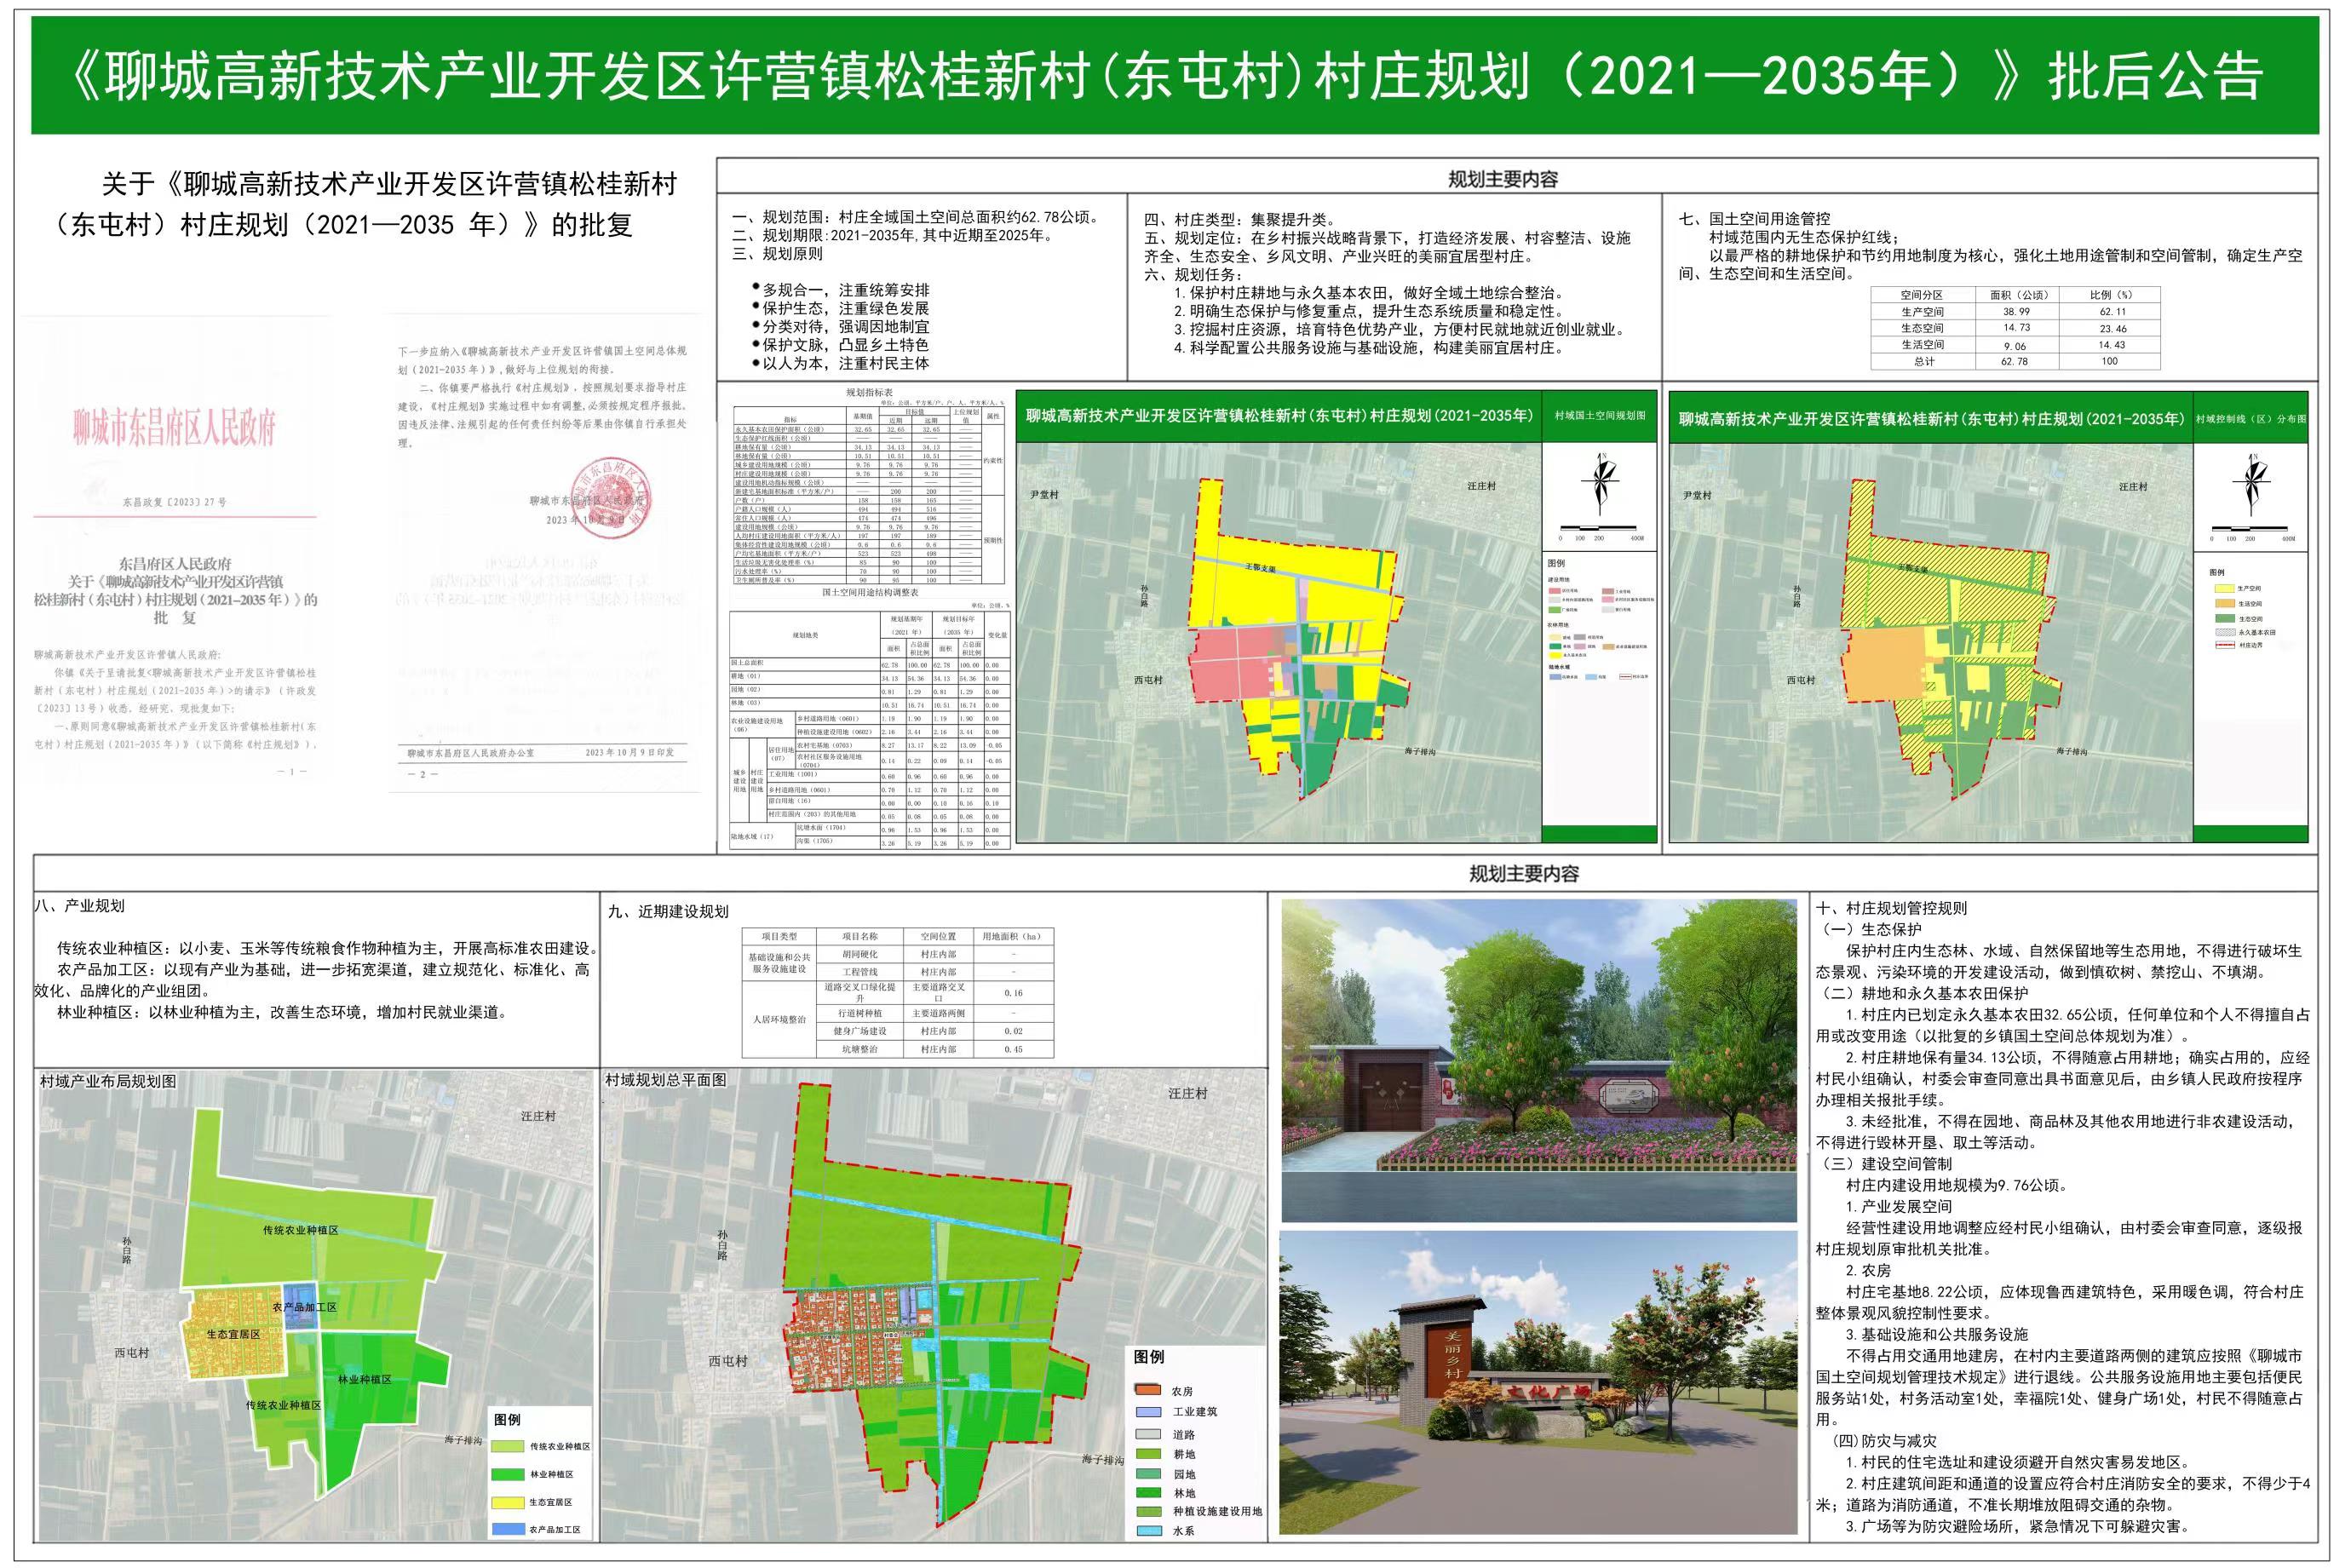 《聊城高新技术产业开发区许营镇松桂新村（东屯村）村庄规划（2021年—2035年）》批后公告.jpg